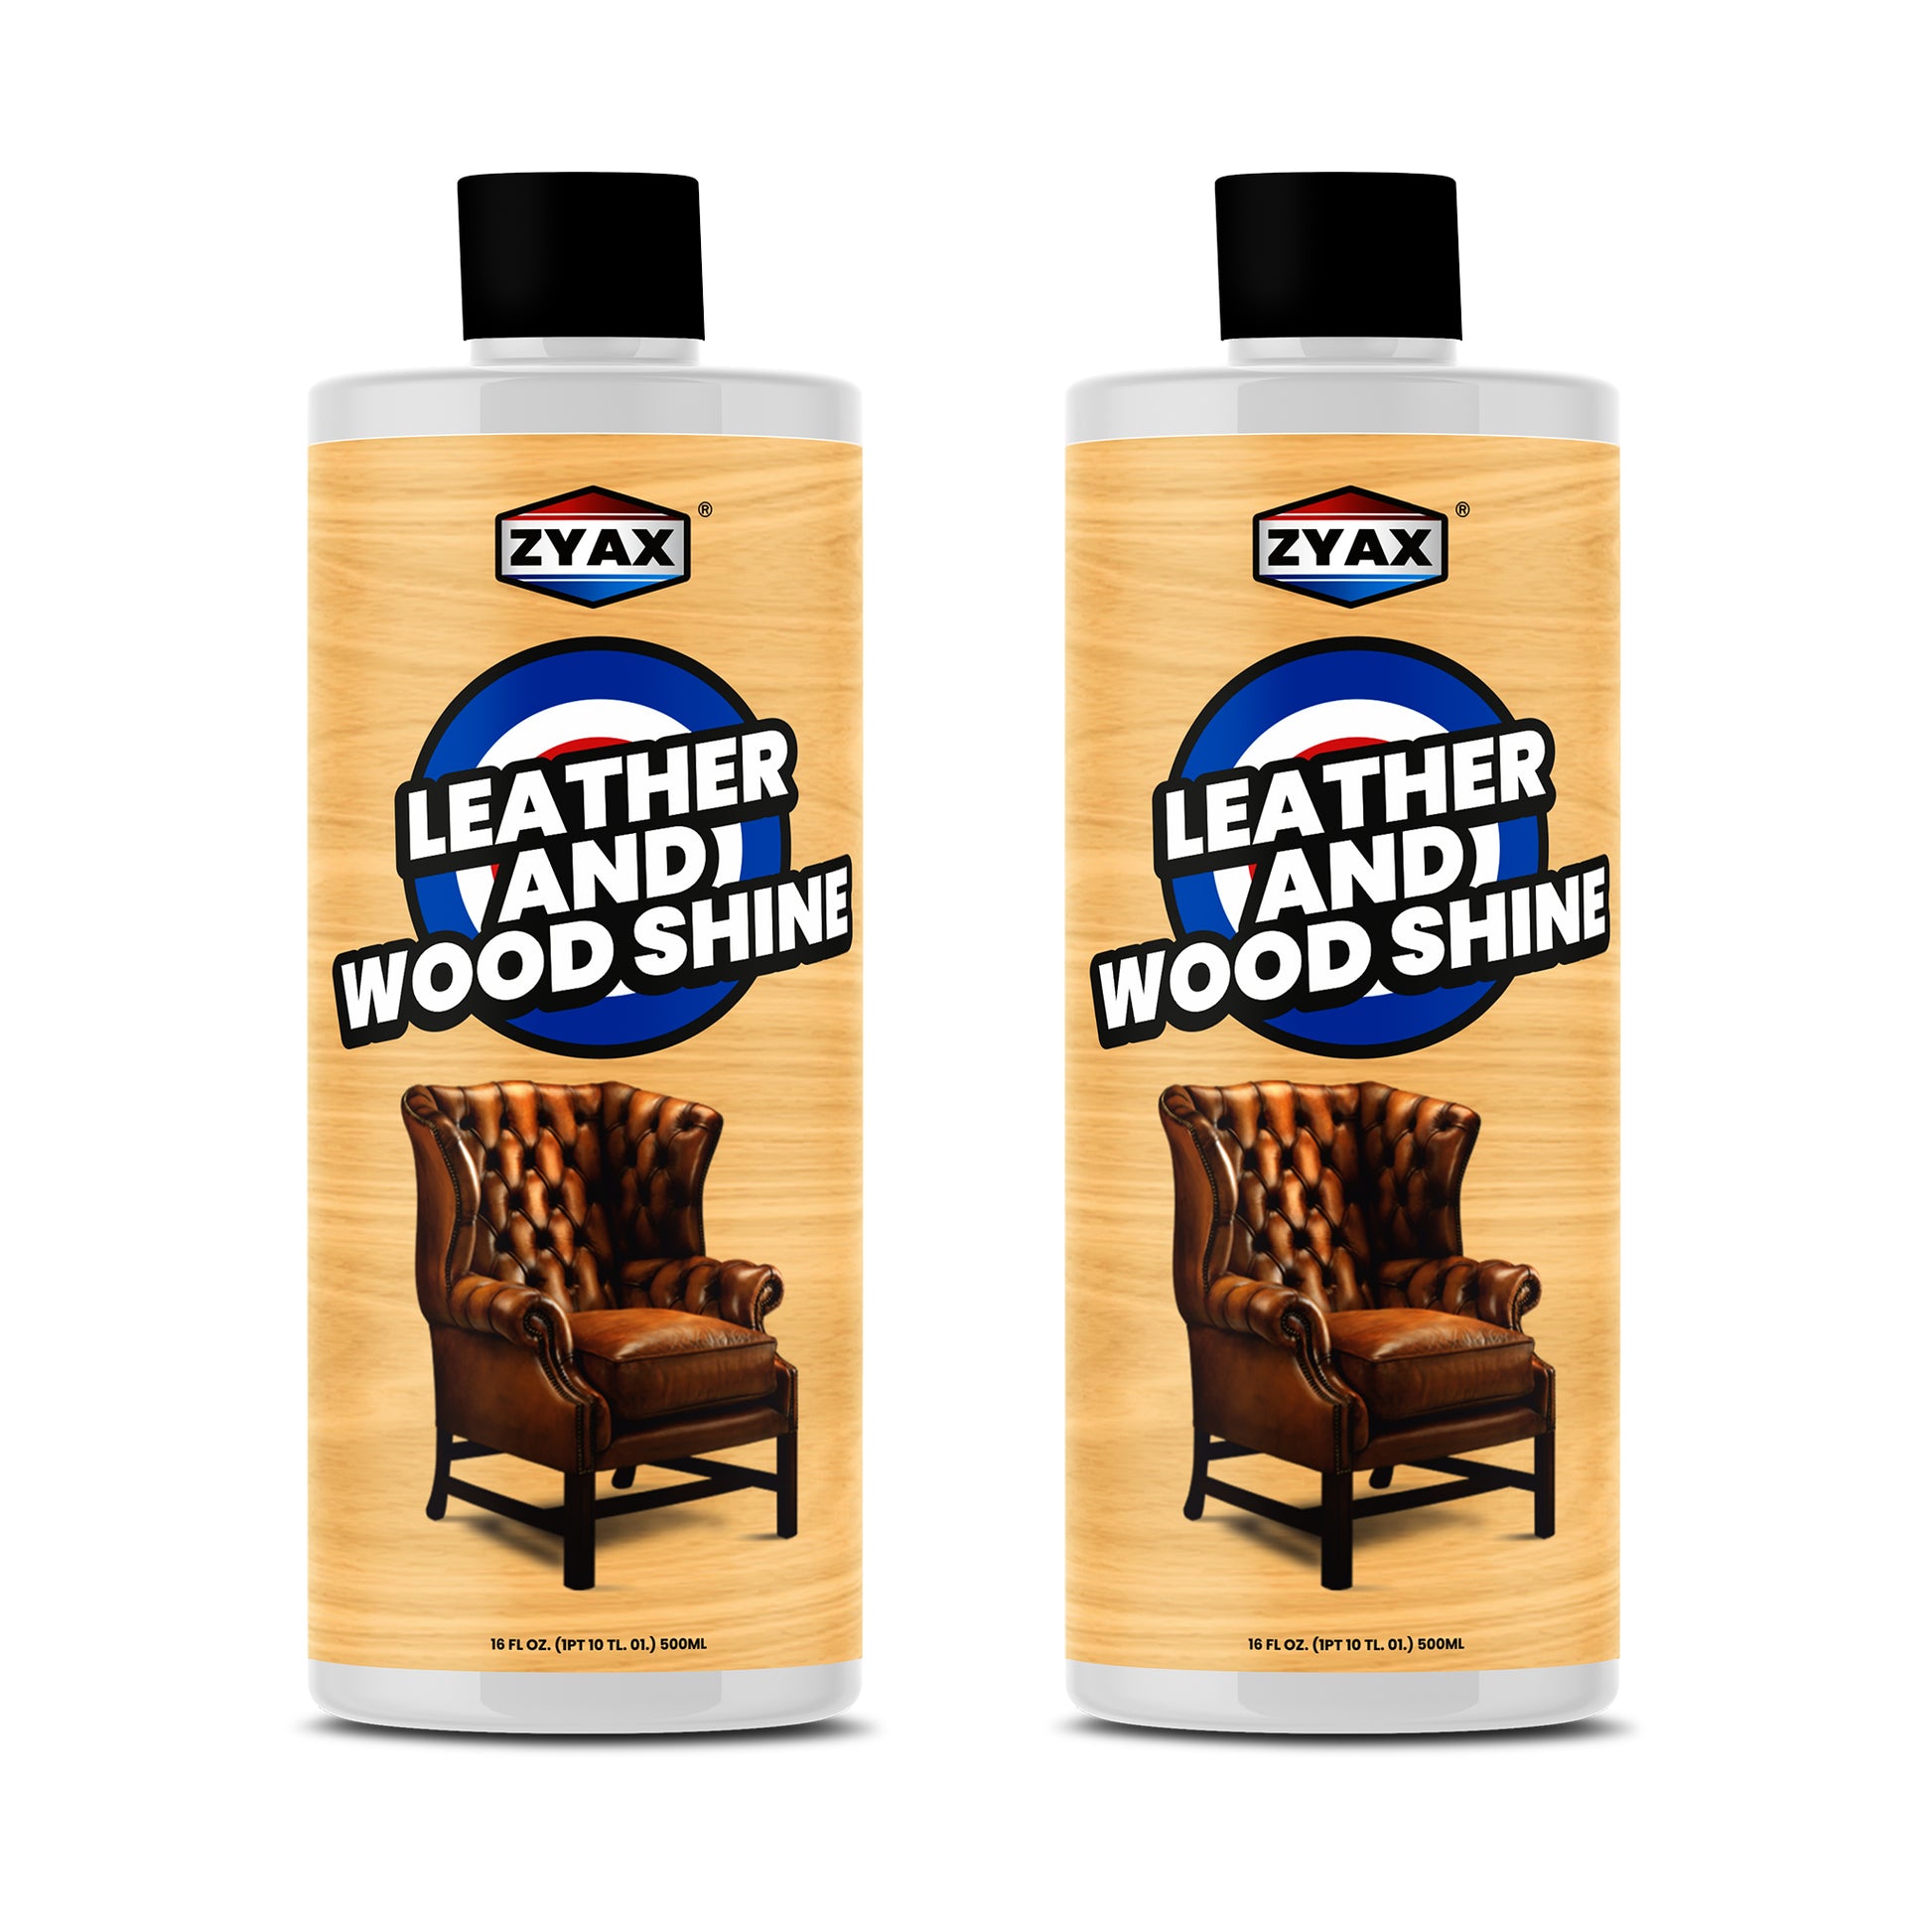 Zyax Leather & Wood Shine - Zyax.in